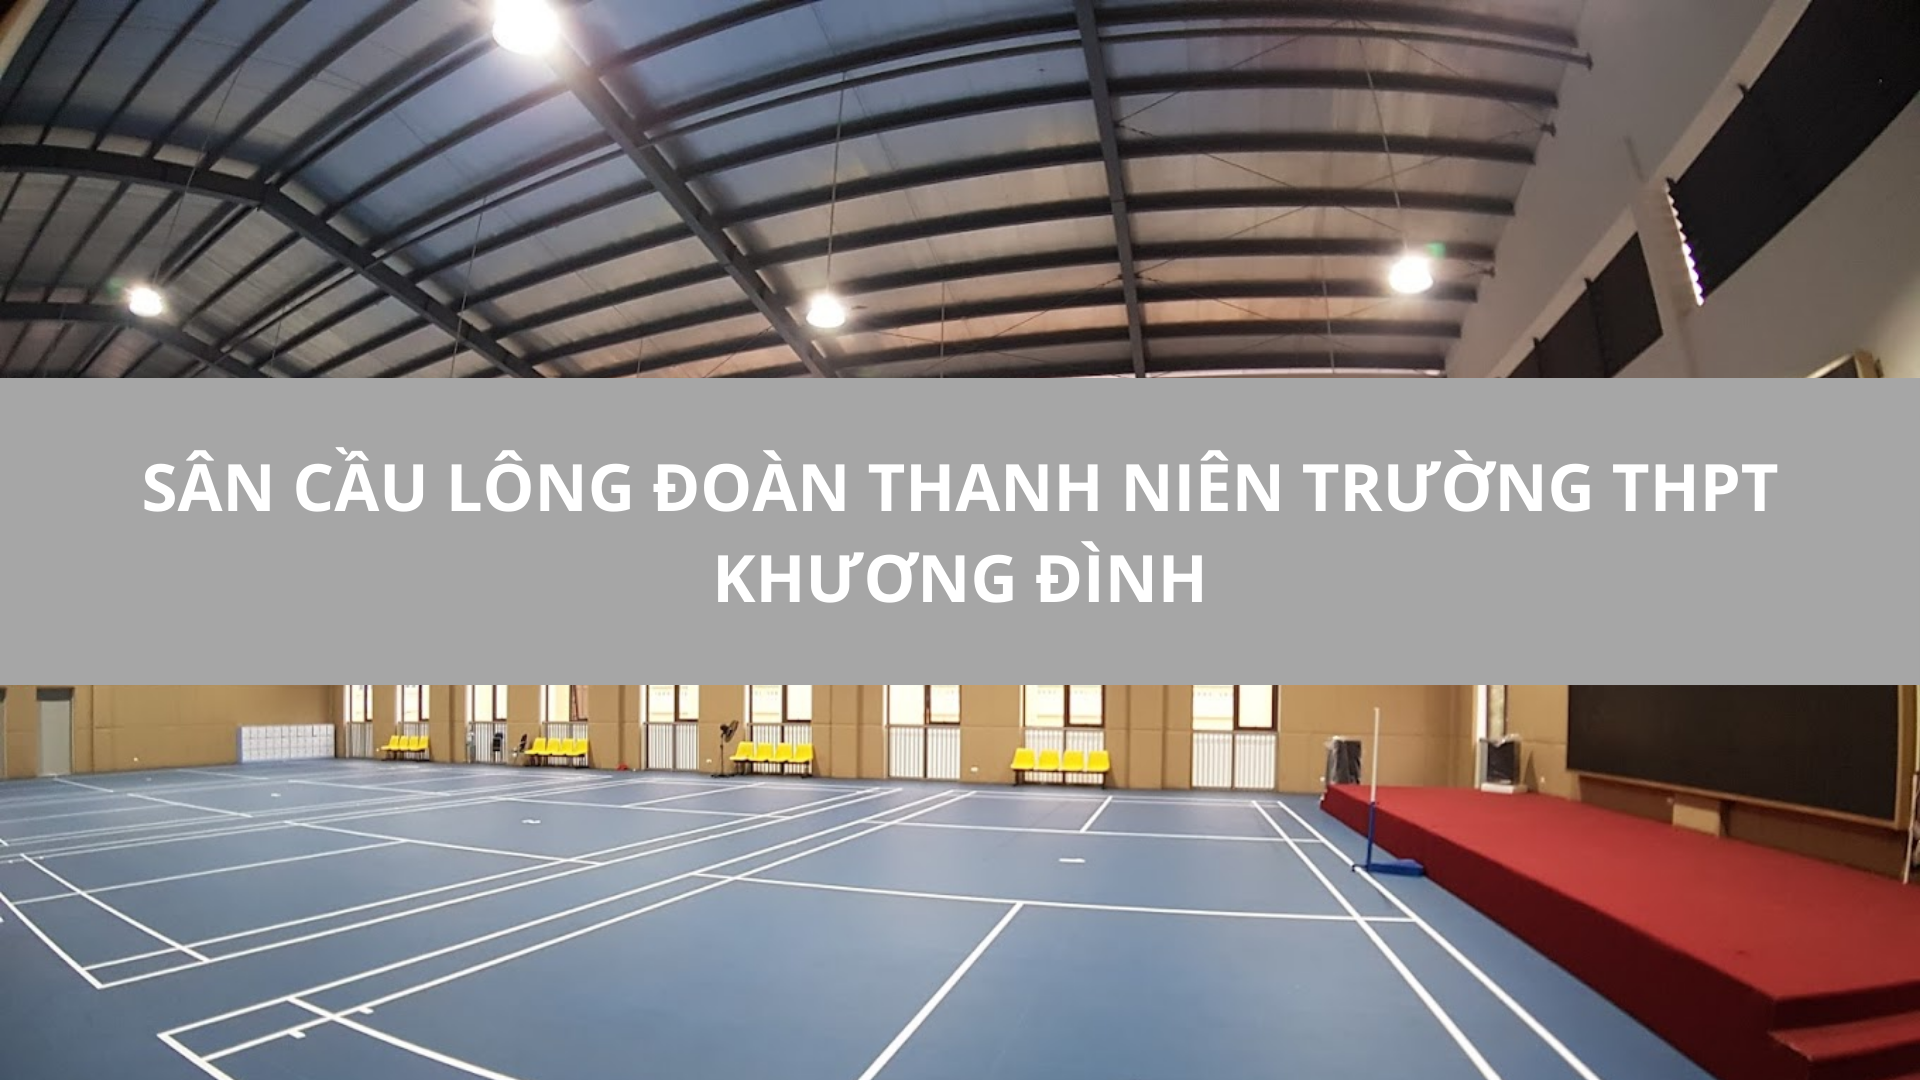 Sân cầu Lông Đoàn Thanh Niên Trường THPT Khương Đình, Thanh Xuân, Hà Nội